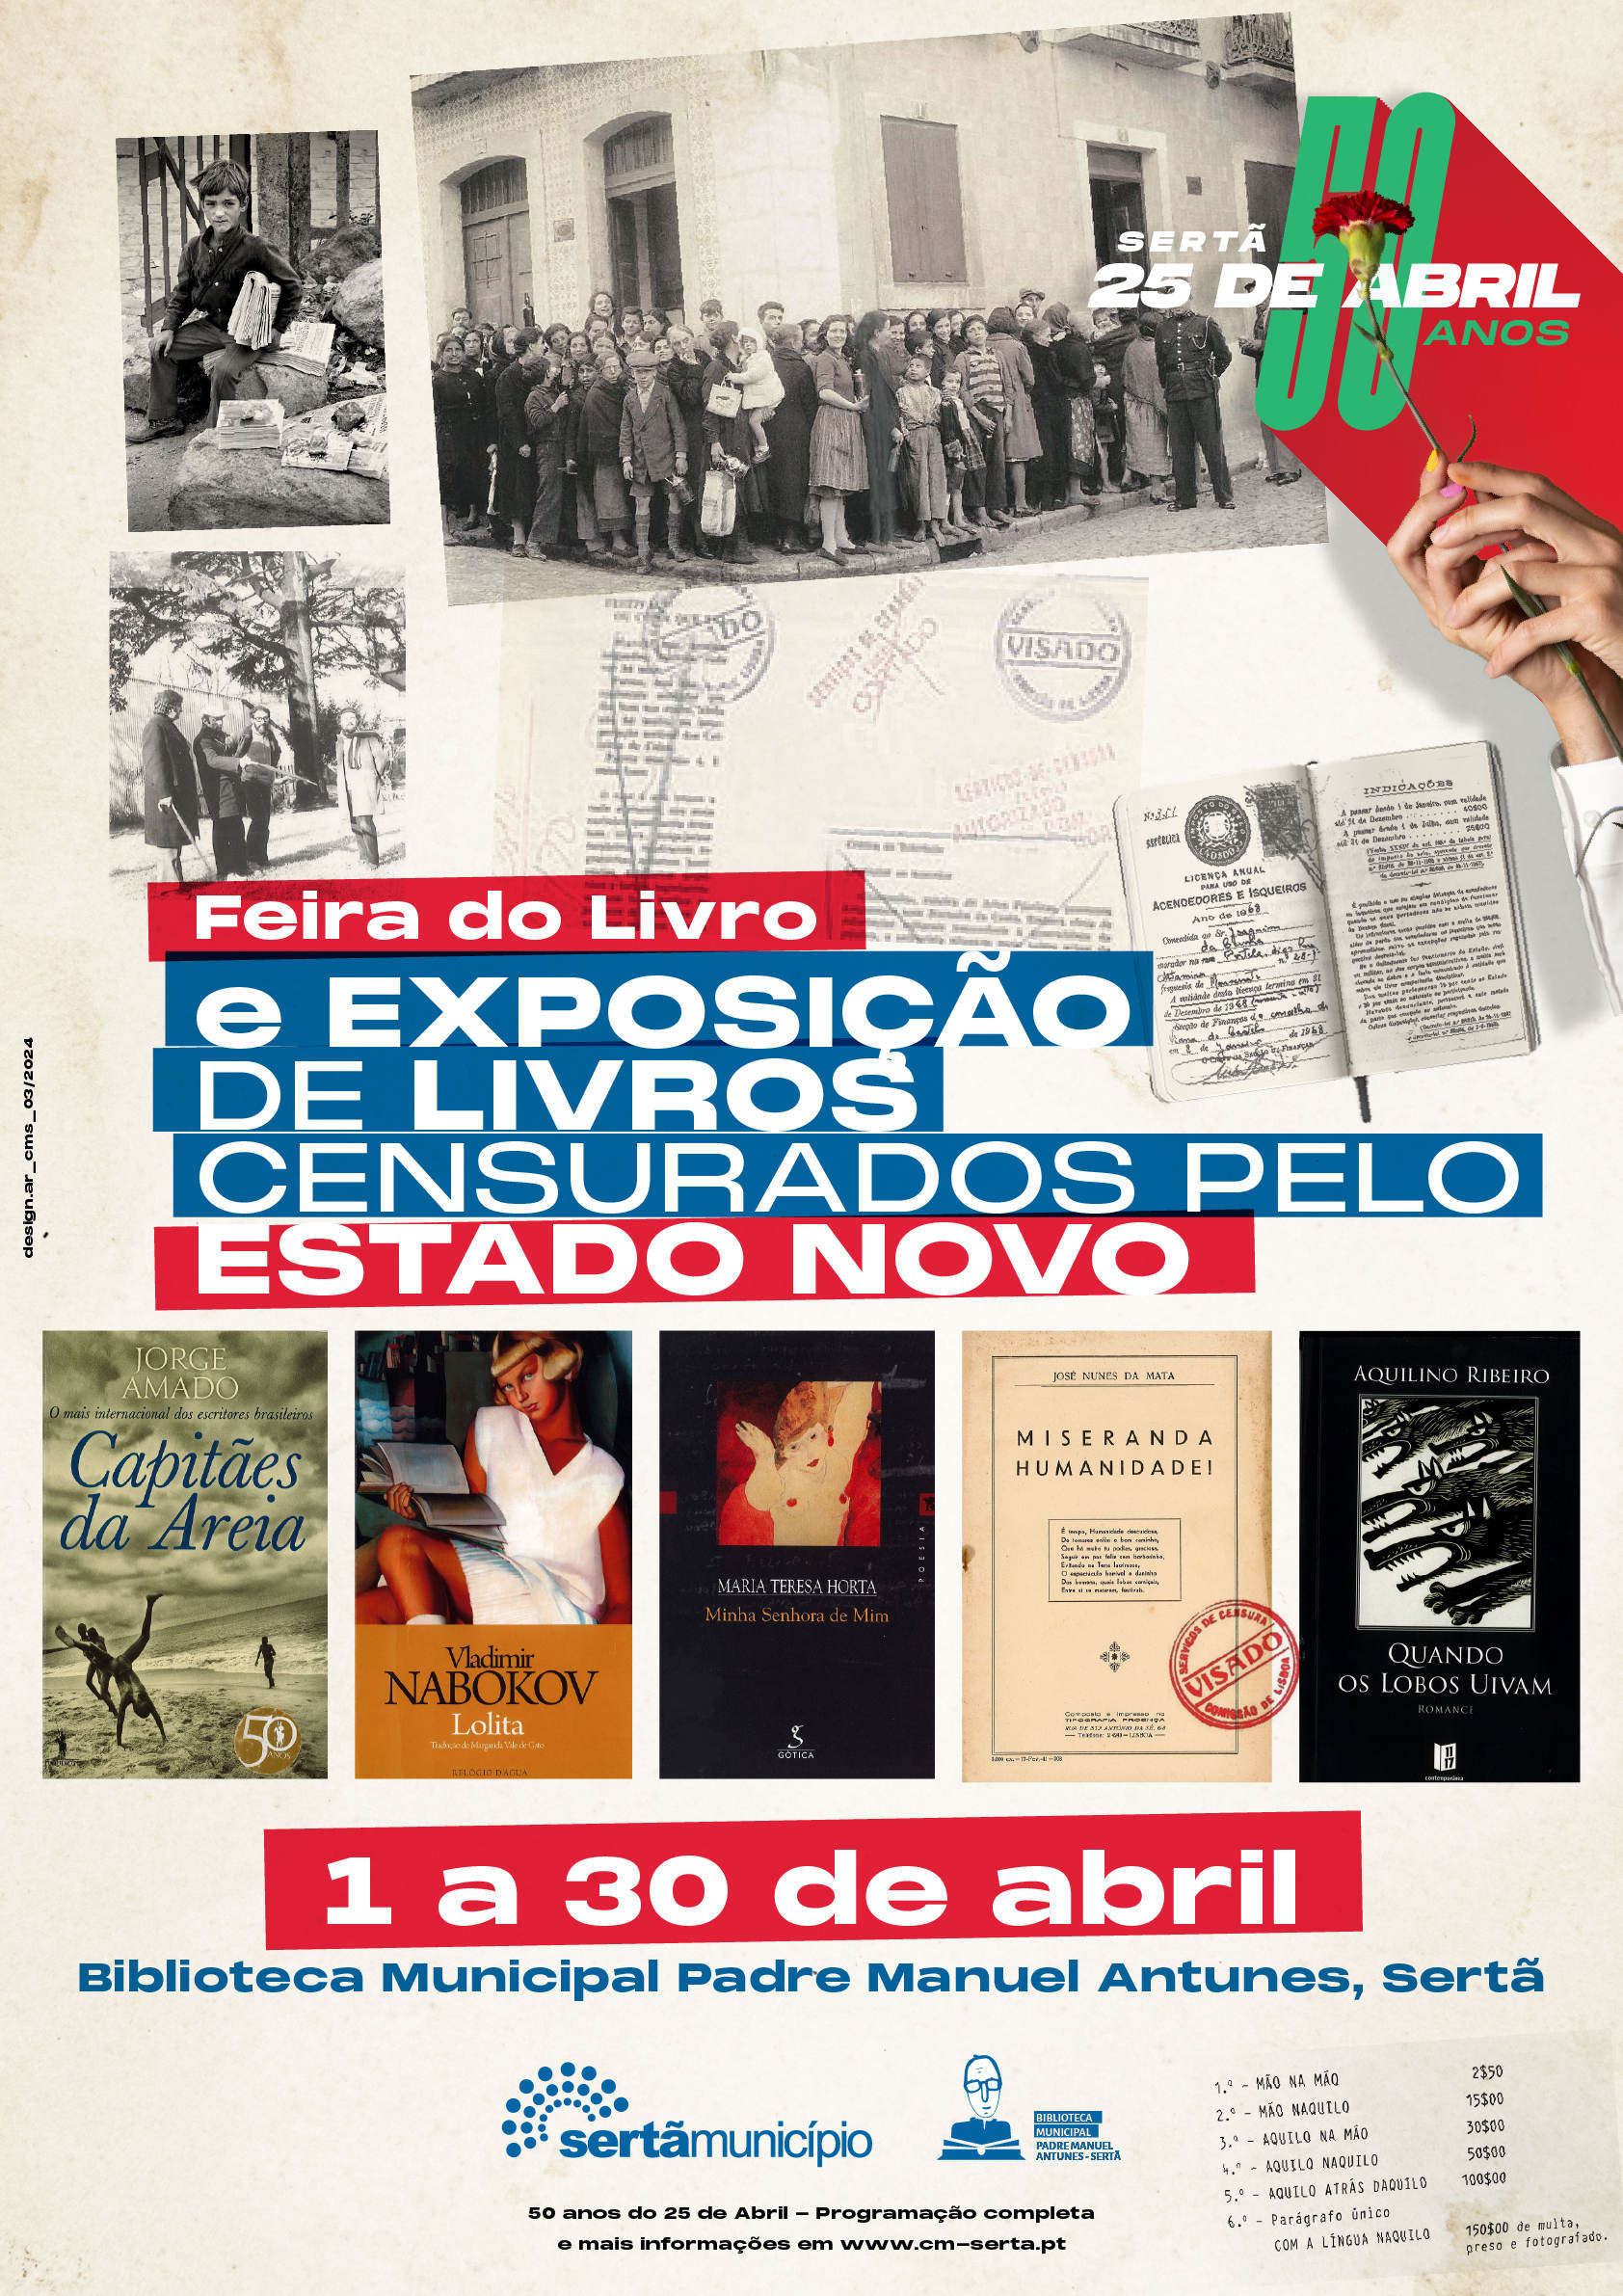 Capa Oficial do Evento Exposição de livros censurados pelo Estado Novo